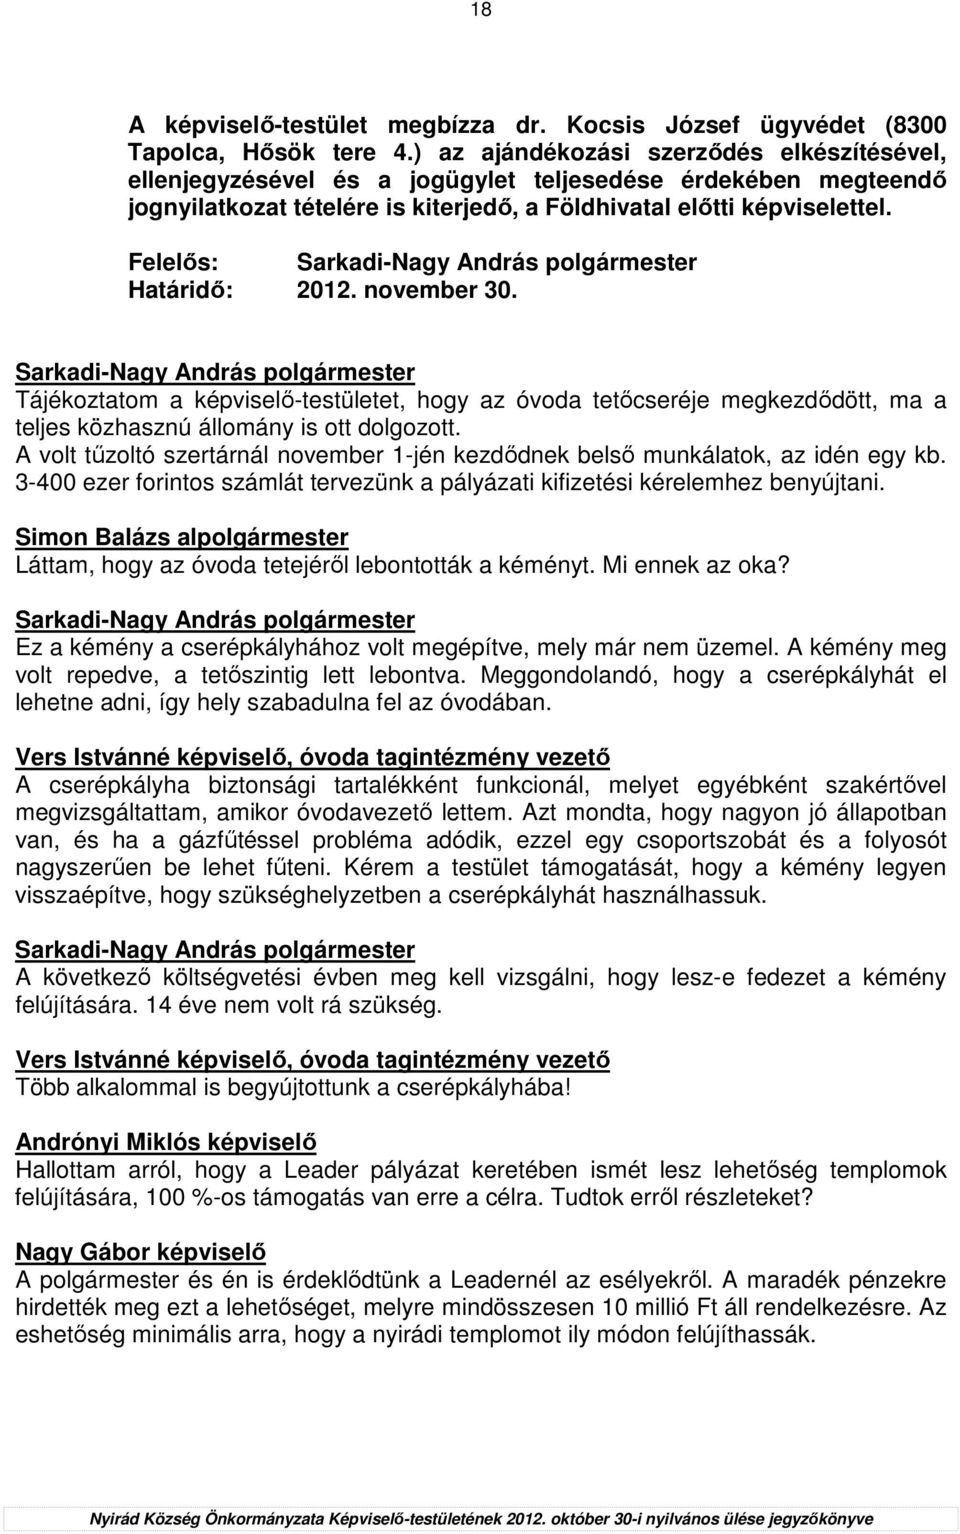 Felelıs: Határidı: 2012. november 30. Tájékoztatom a képviselı-testületet, hogy az óvoda tetıcseréje megkezdıdött, ma a teljes közhasznú állomány is ott dolgozott.